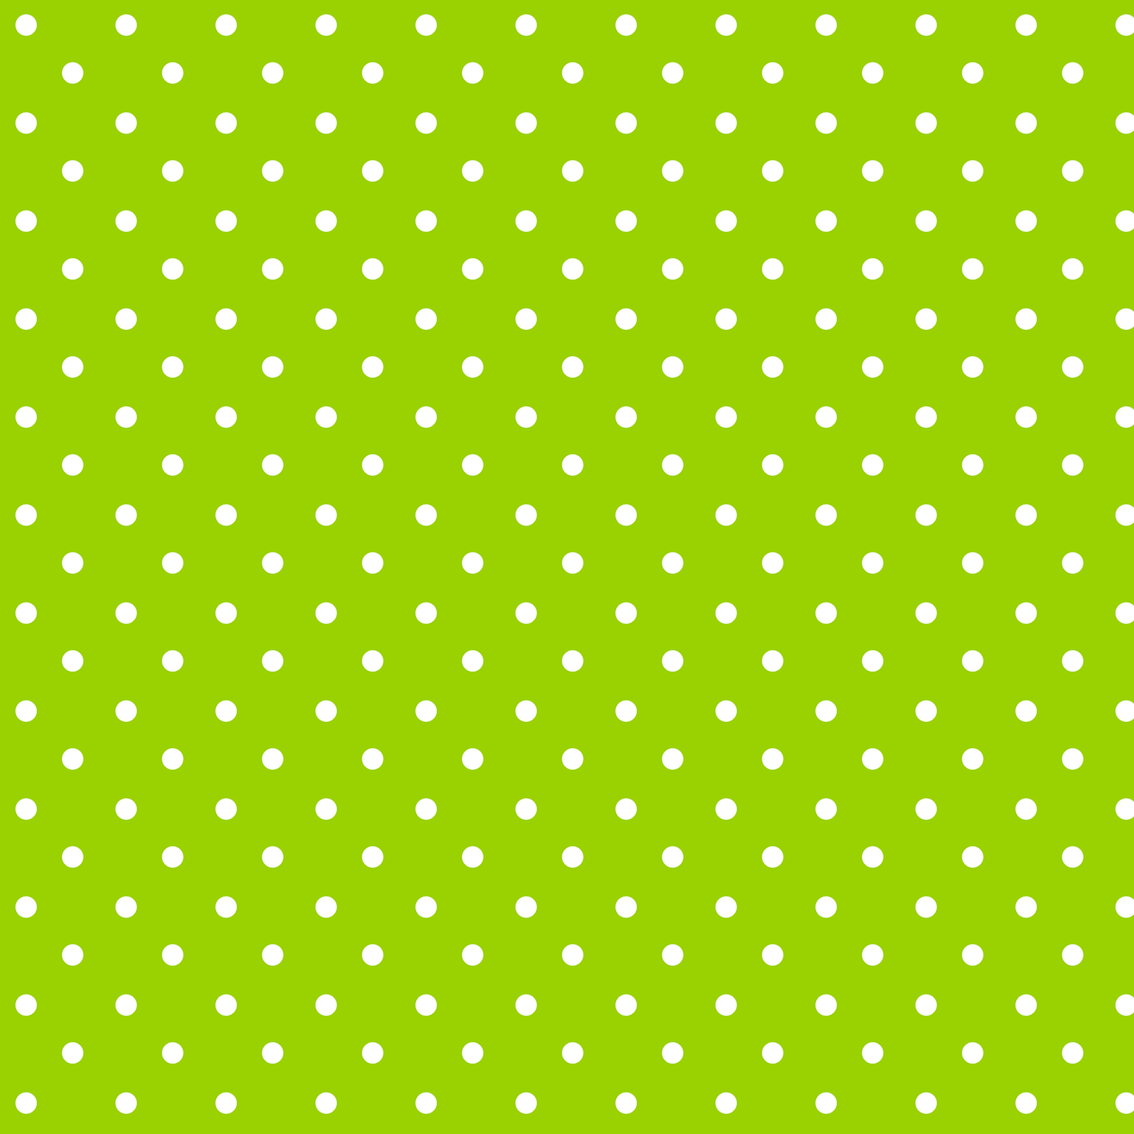 34+ Free 2 tone green polka dot background paper